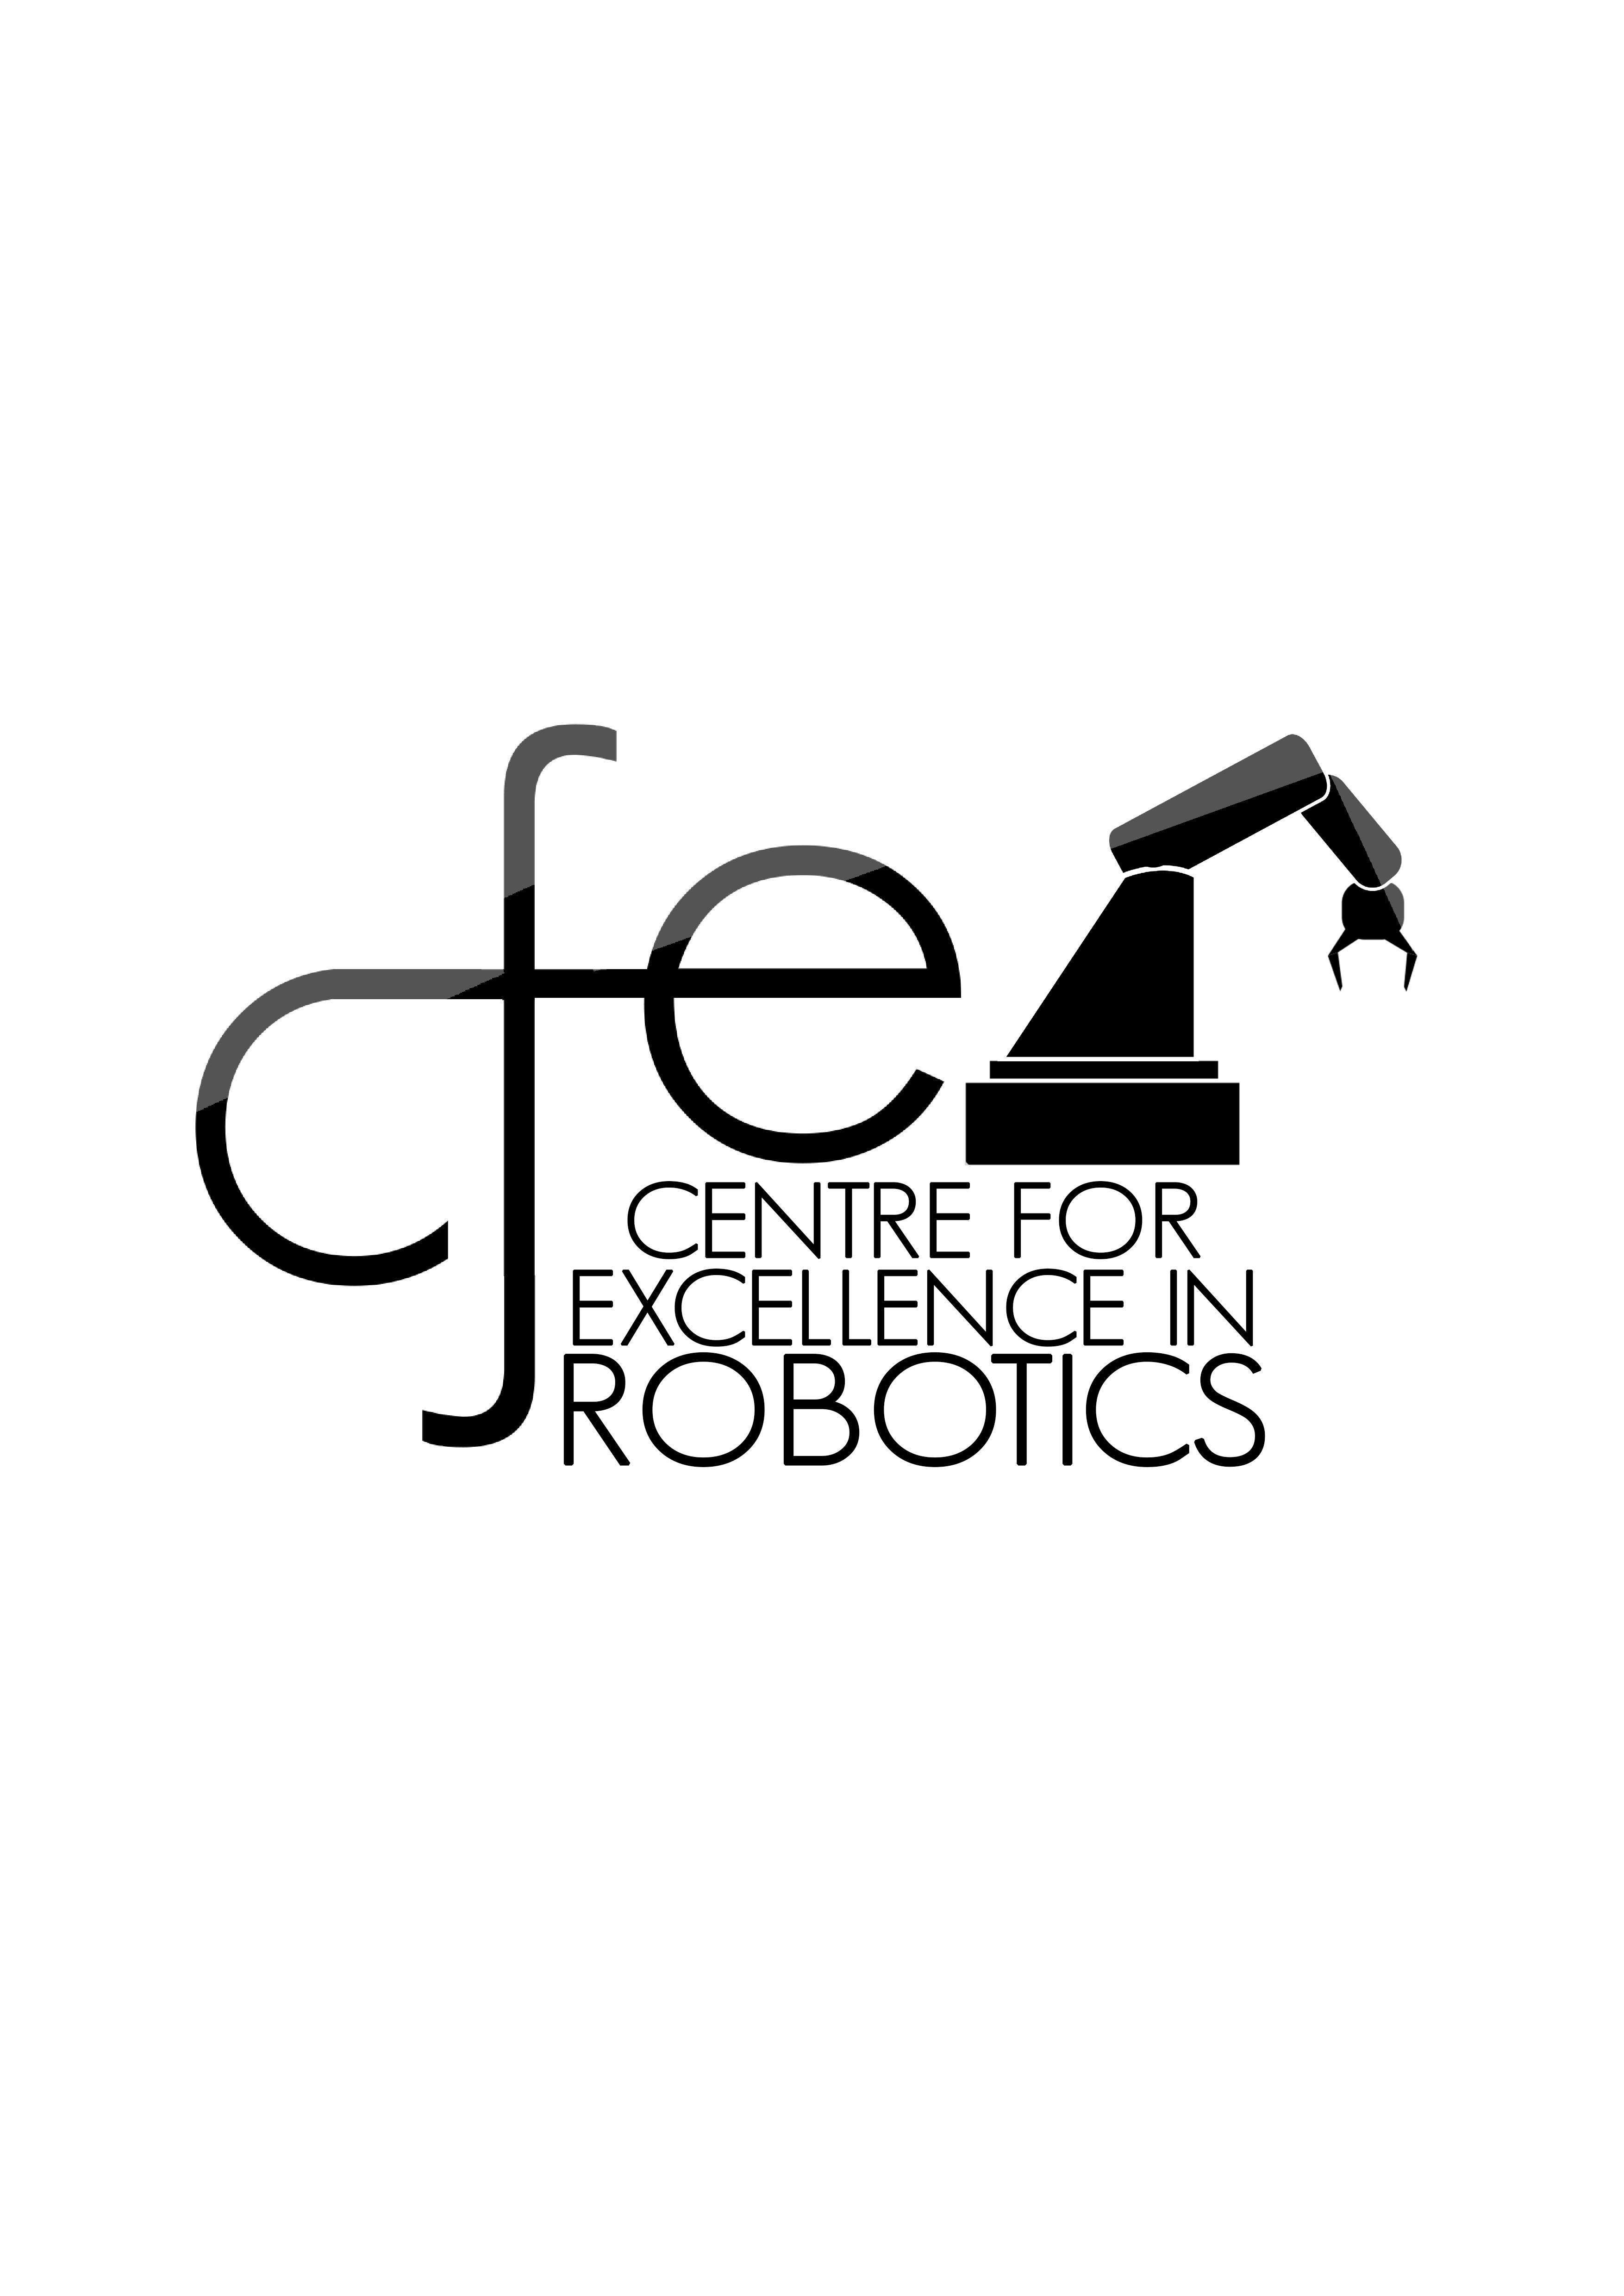 CFER Logo